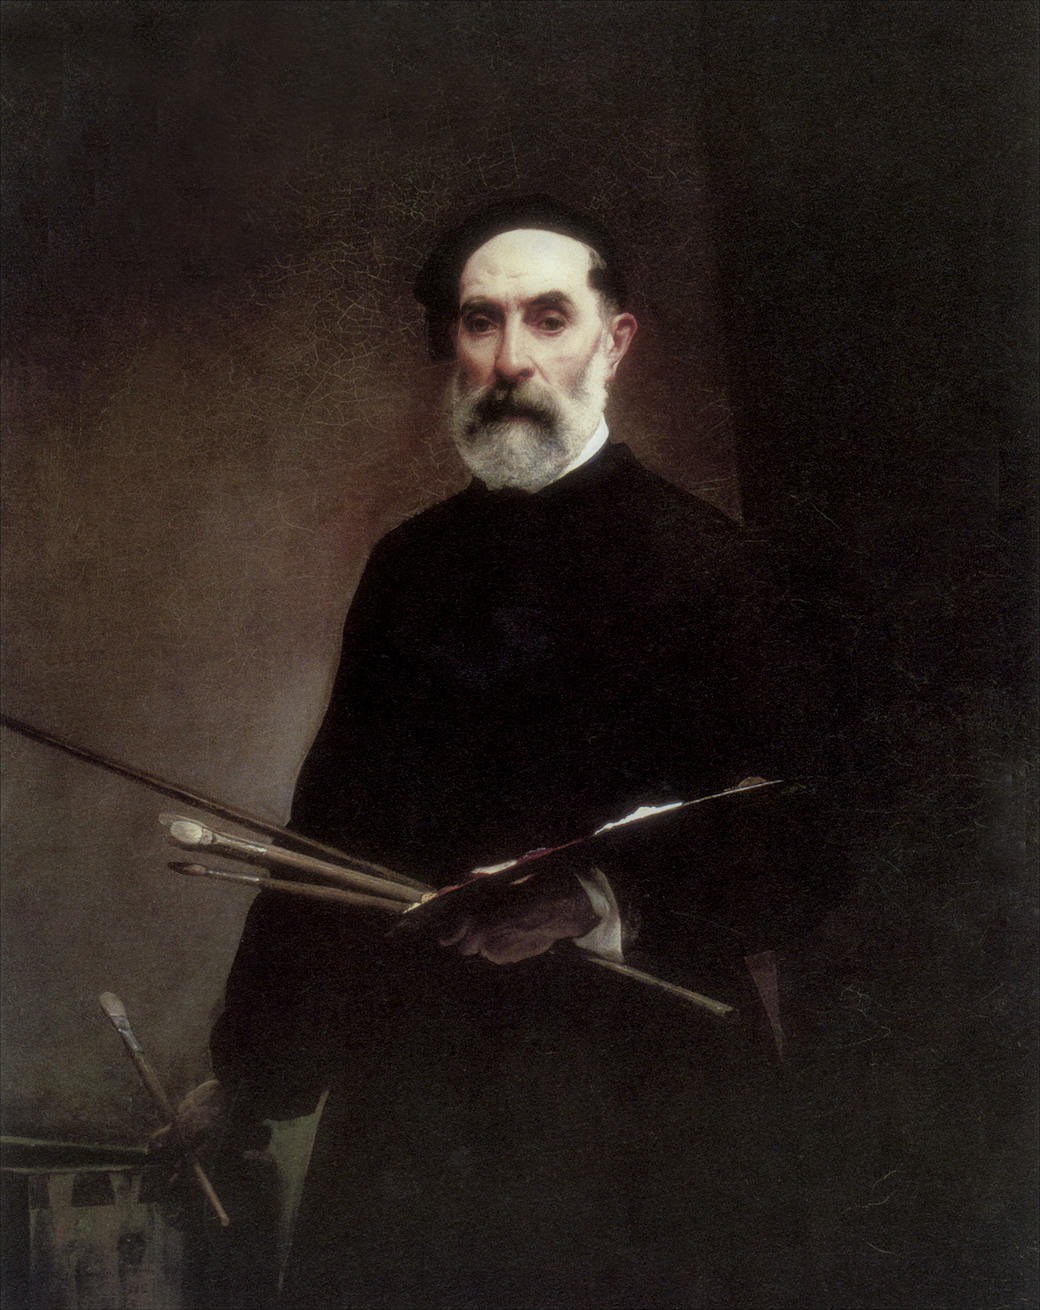 Francesco+Hayez-1791-1882 (12).jpg